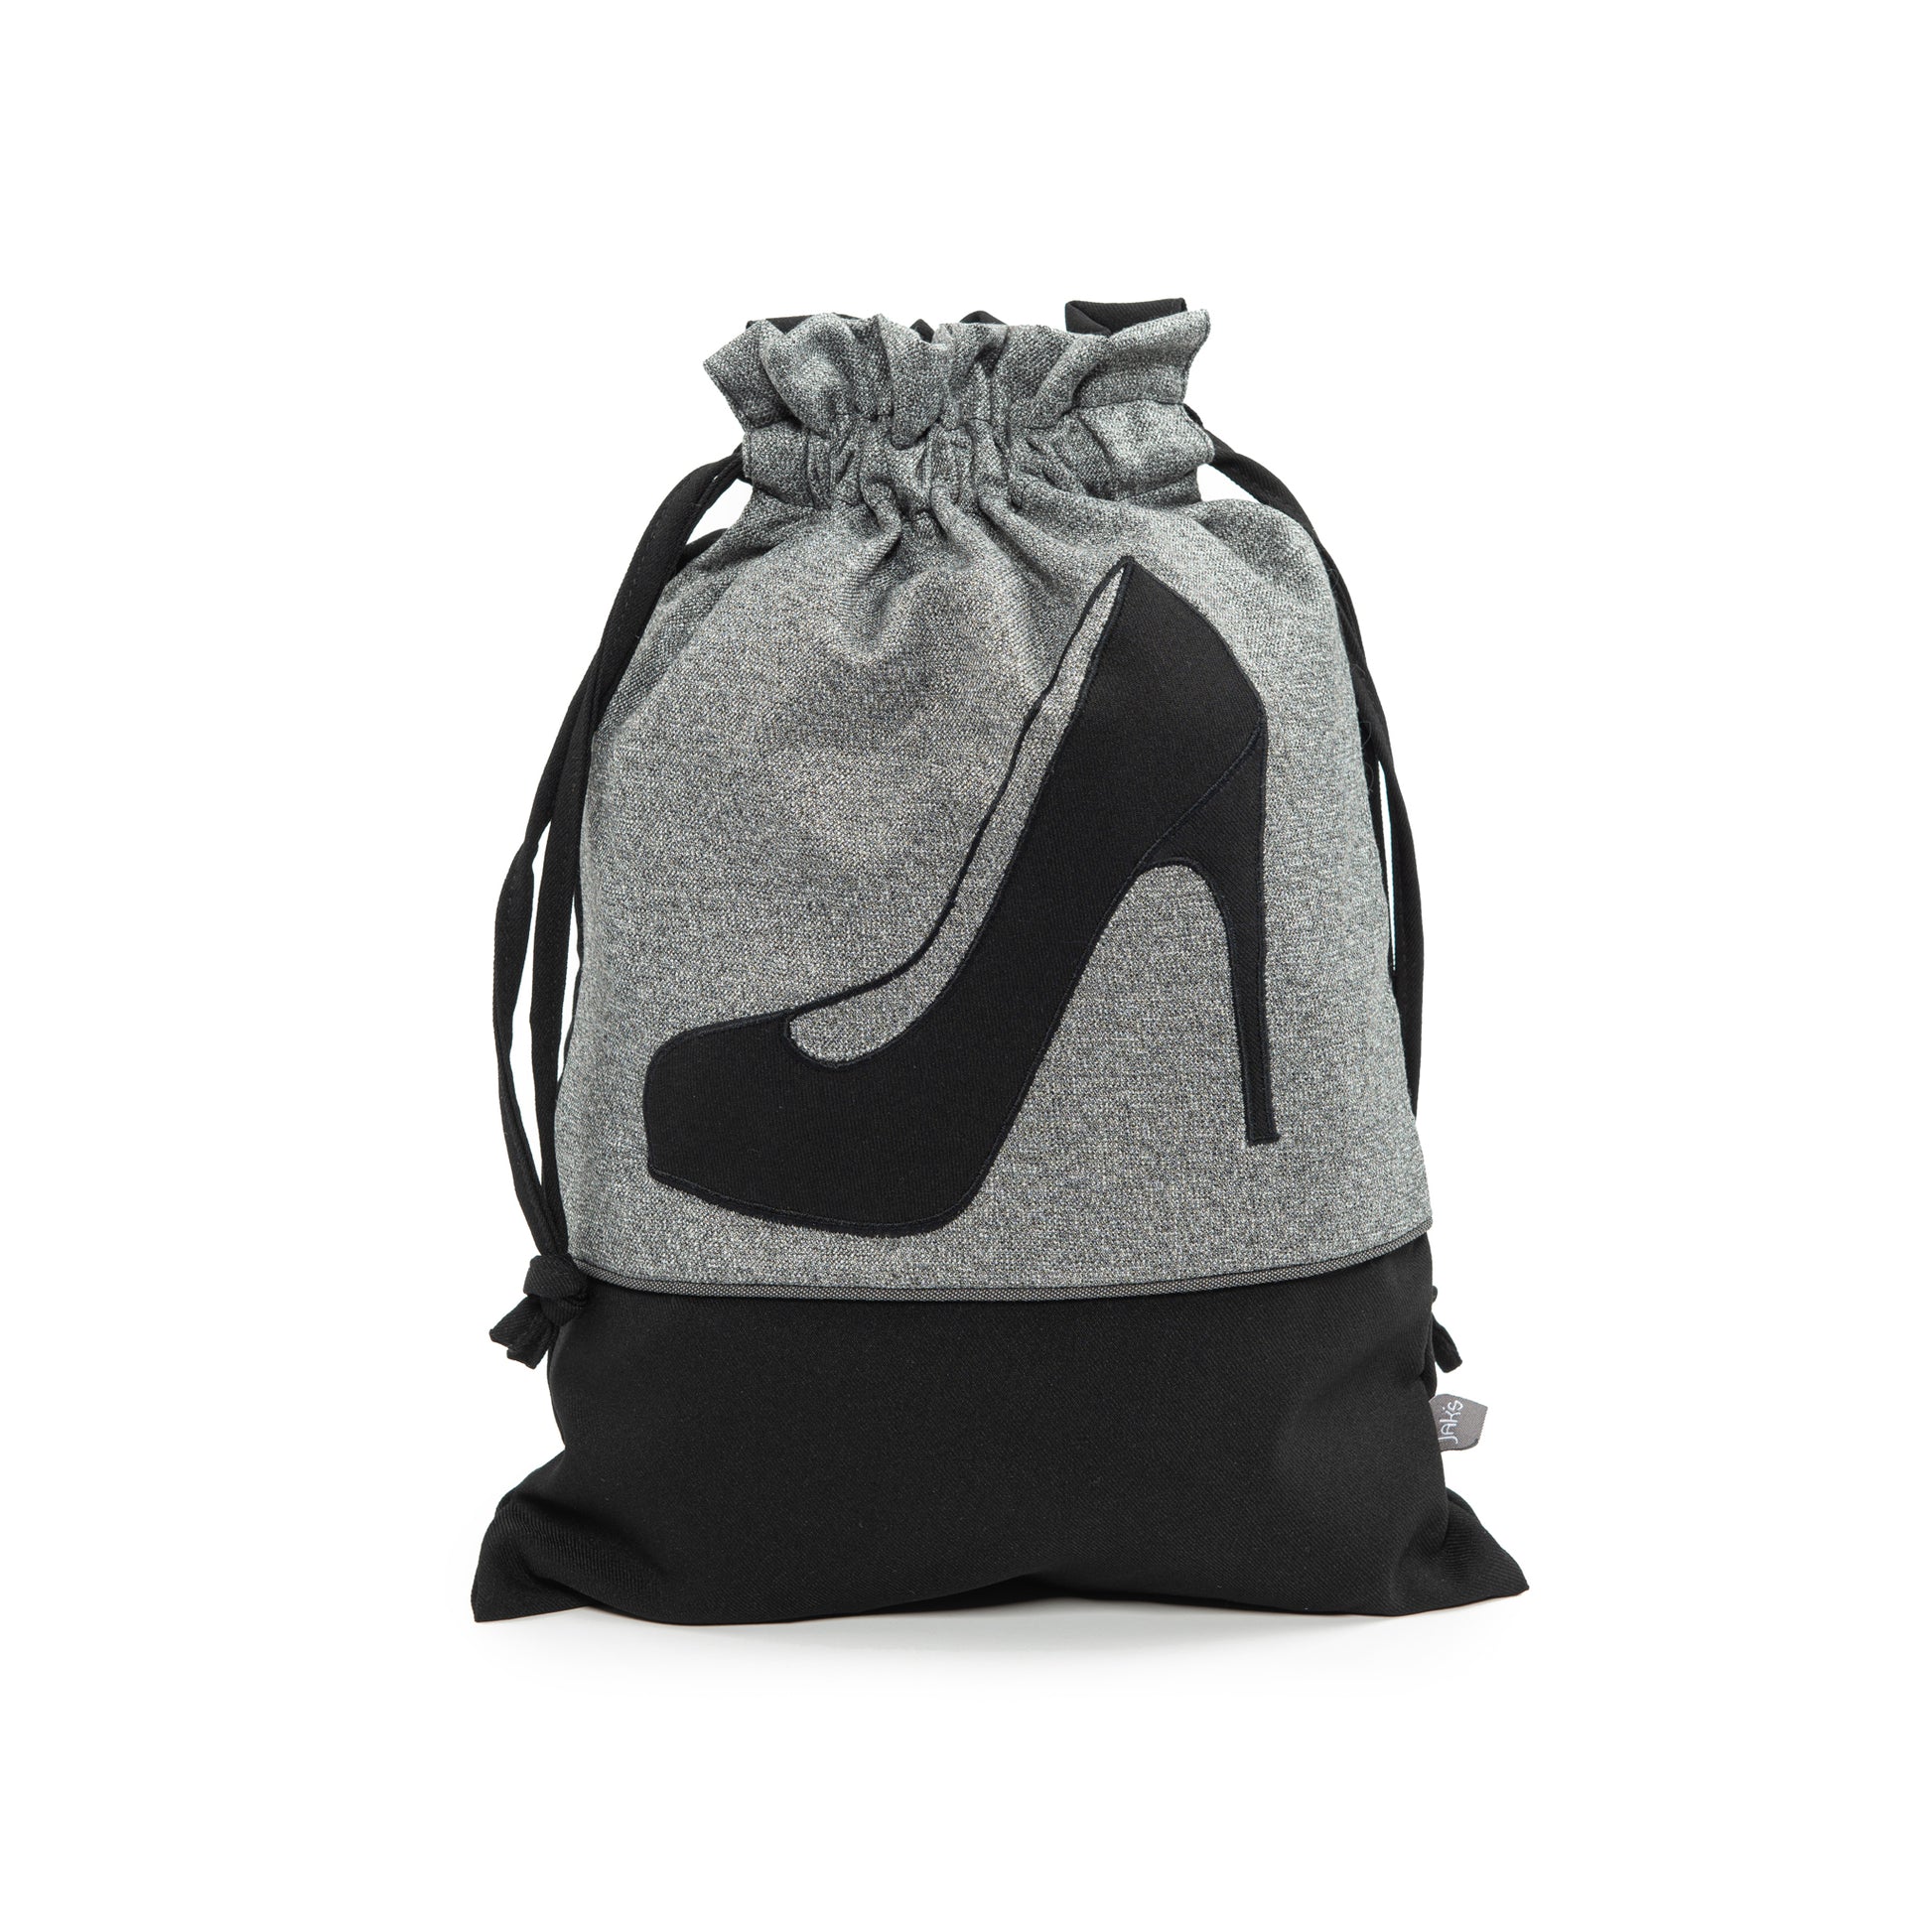 Shoe Bag with Black Platform Shoe